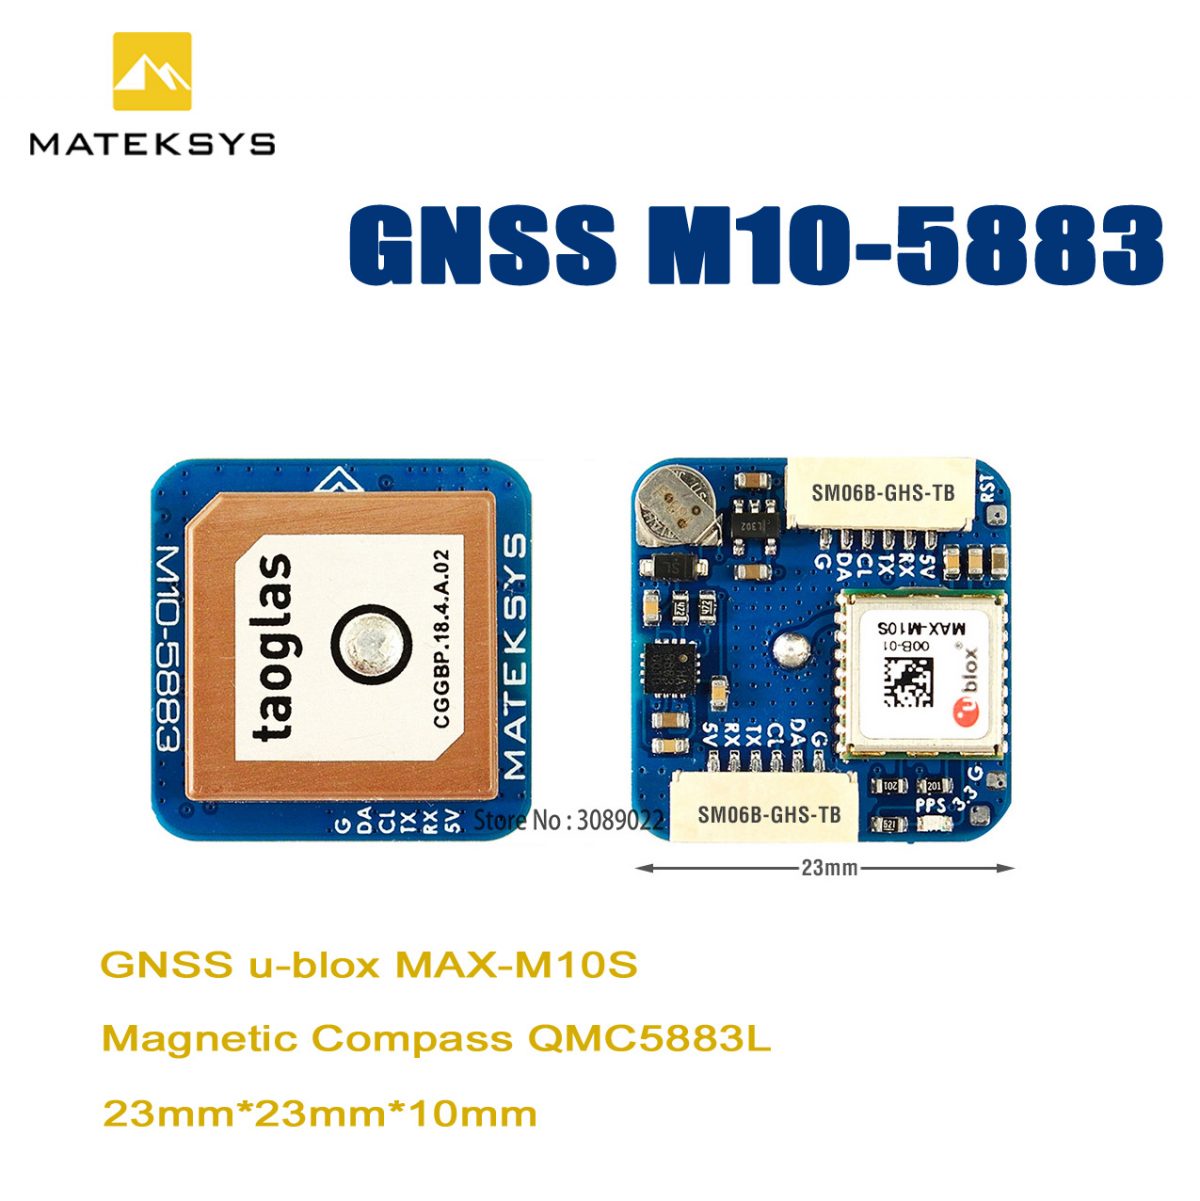 Matek Systems GNSS M10